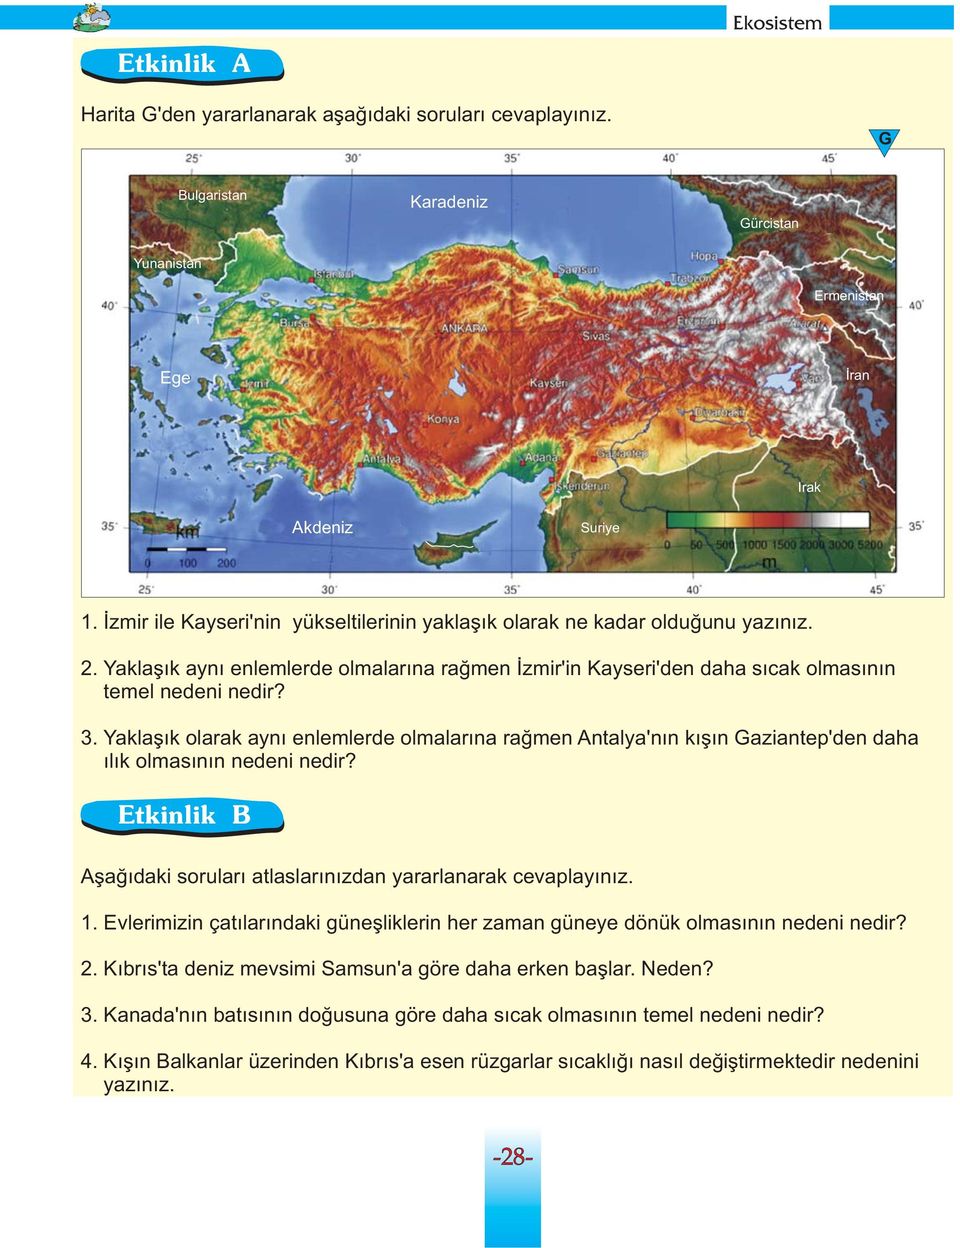 Yaklaşık olarak aynı enlemlerde olmalarına rağmen Antalya'nın kışın Gaziantep'den daha ılık olmasının nedeni nedir? Etkinlik B Aşağıdaki soruları atlaslarınızdan yararlanarak cevaplayınız. 1.